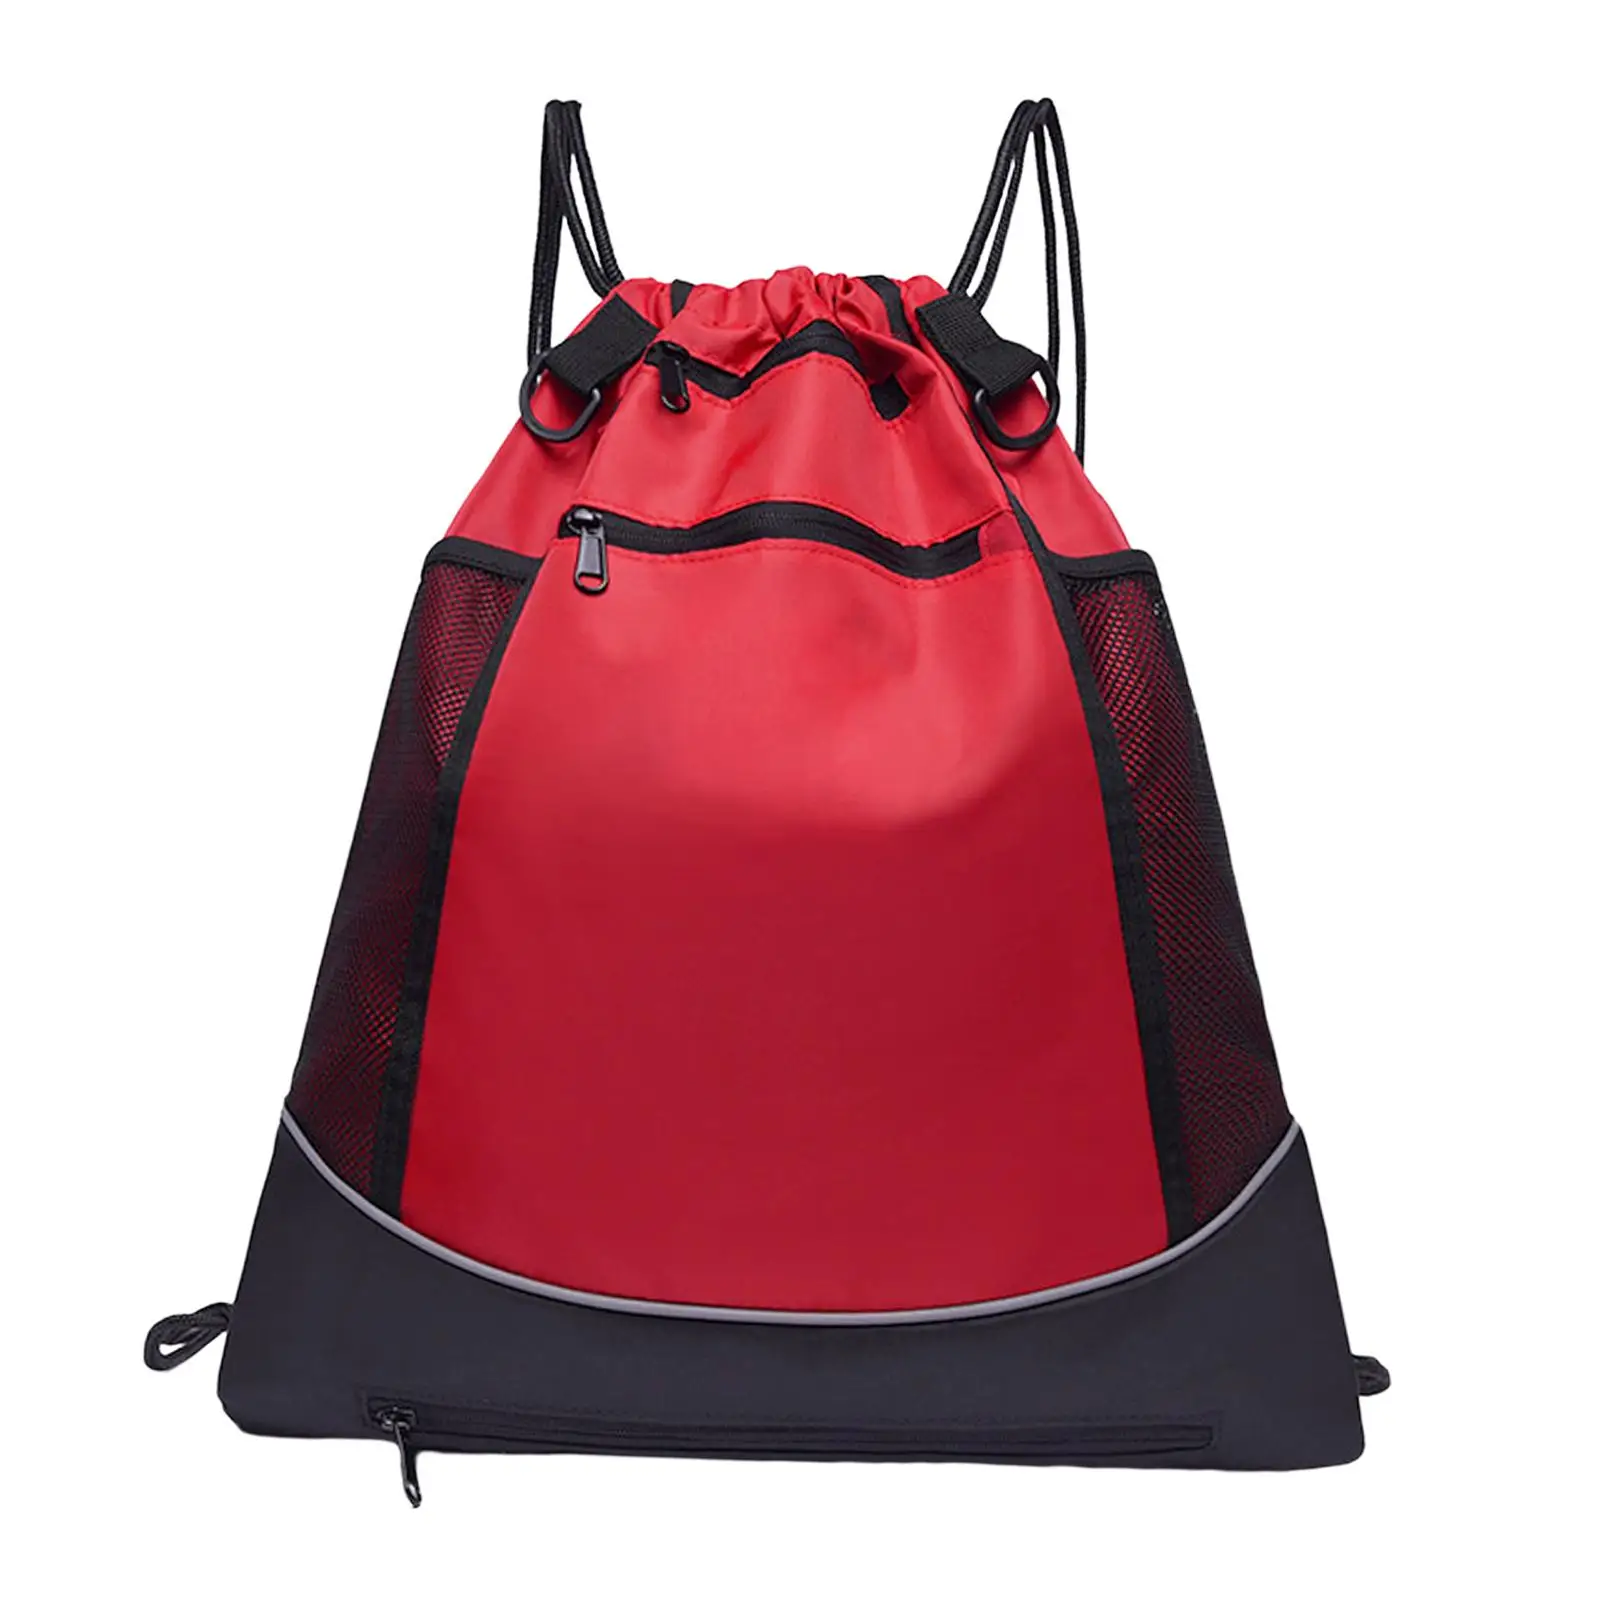 Basketball Backpack Adjustable Shoulder Strap Men Women Bag for Football Gym